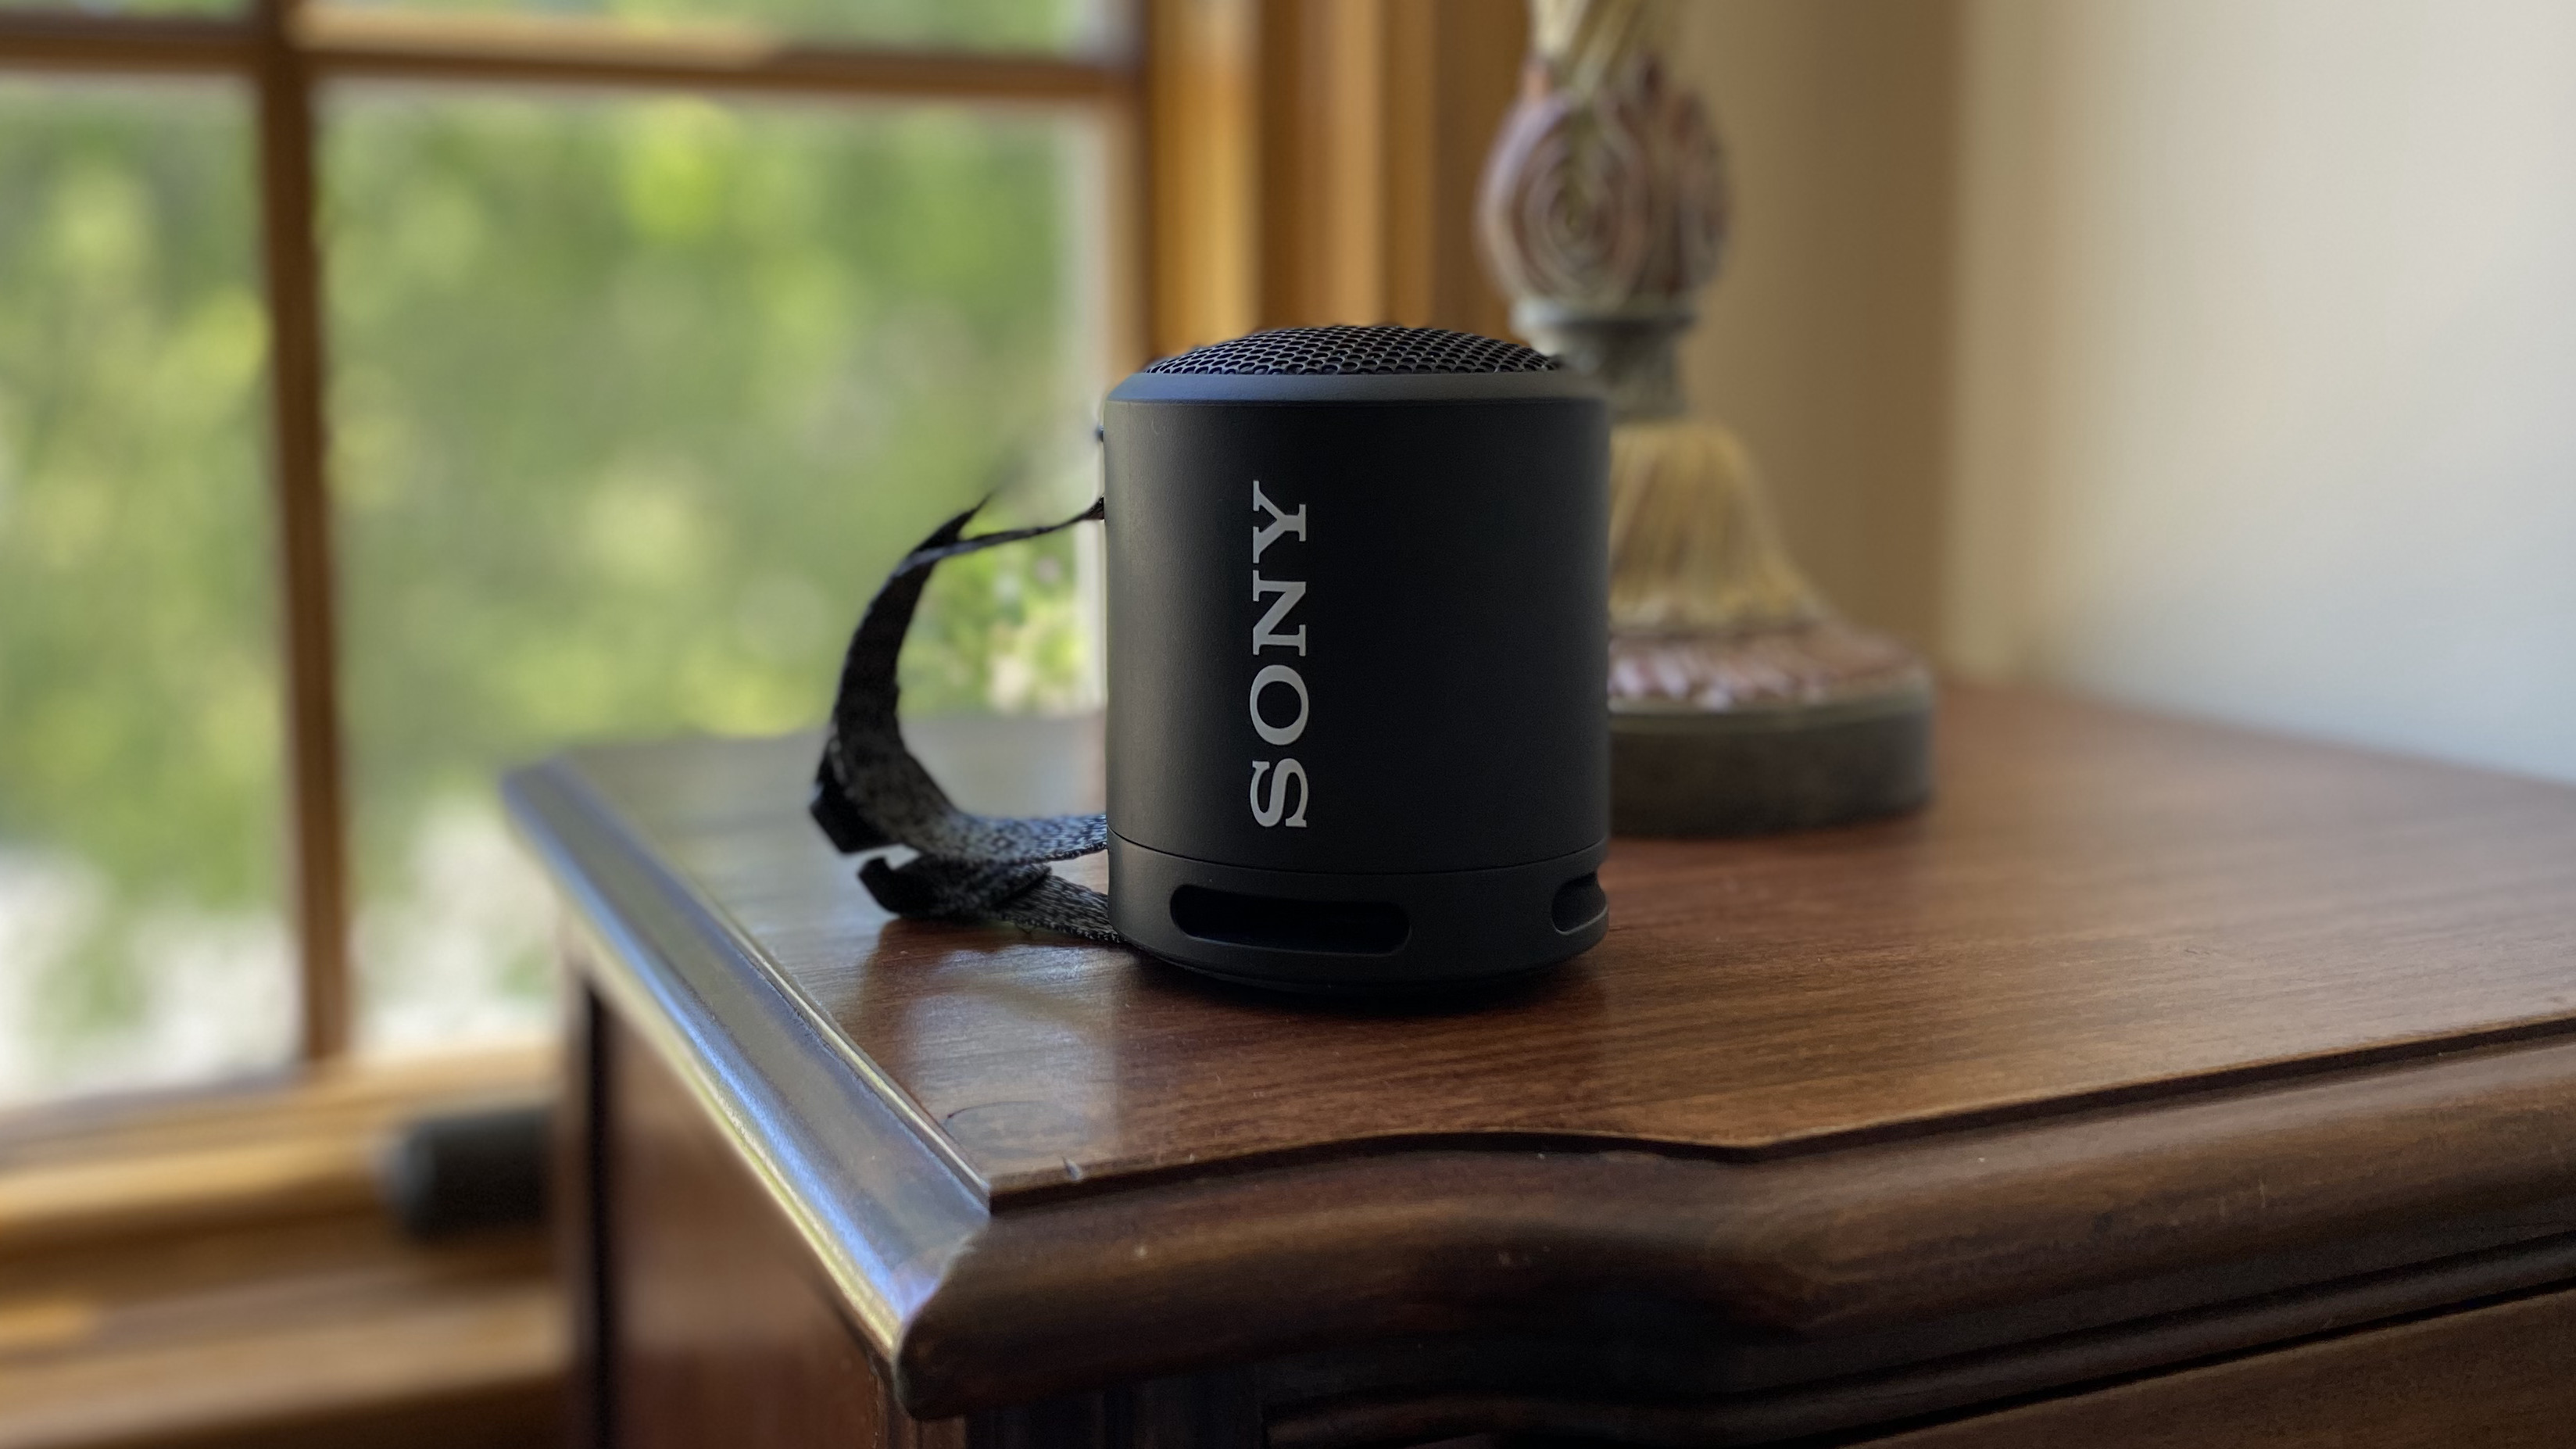 Sony SRS-XB13 Bluetooth Speaker review | TechRadar